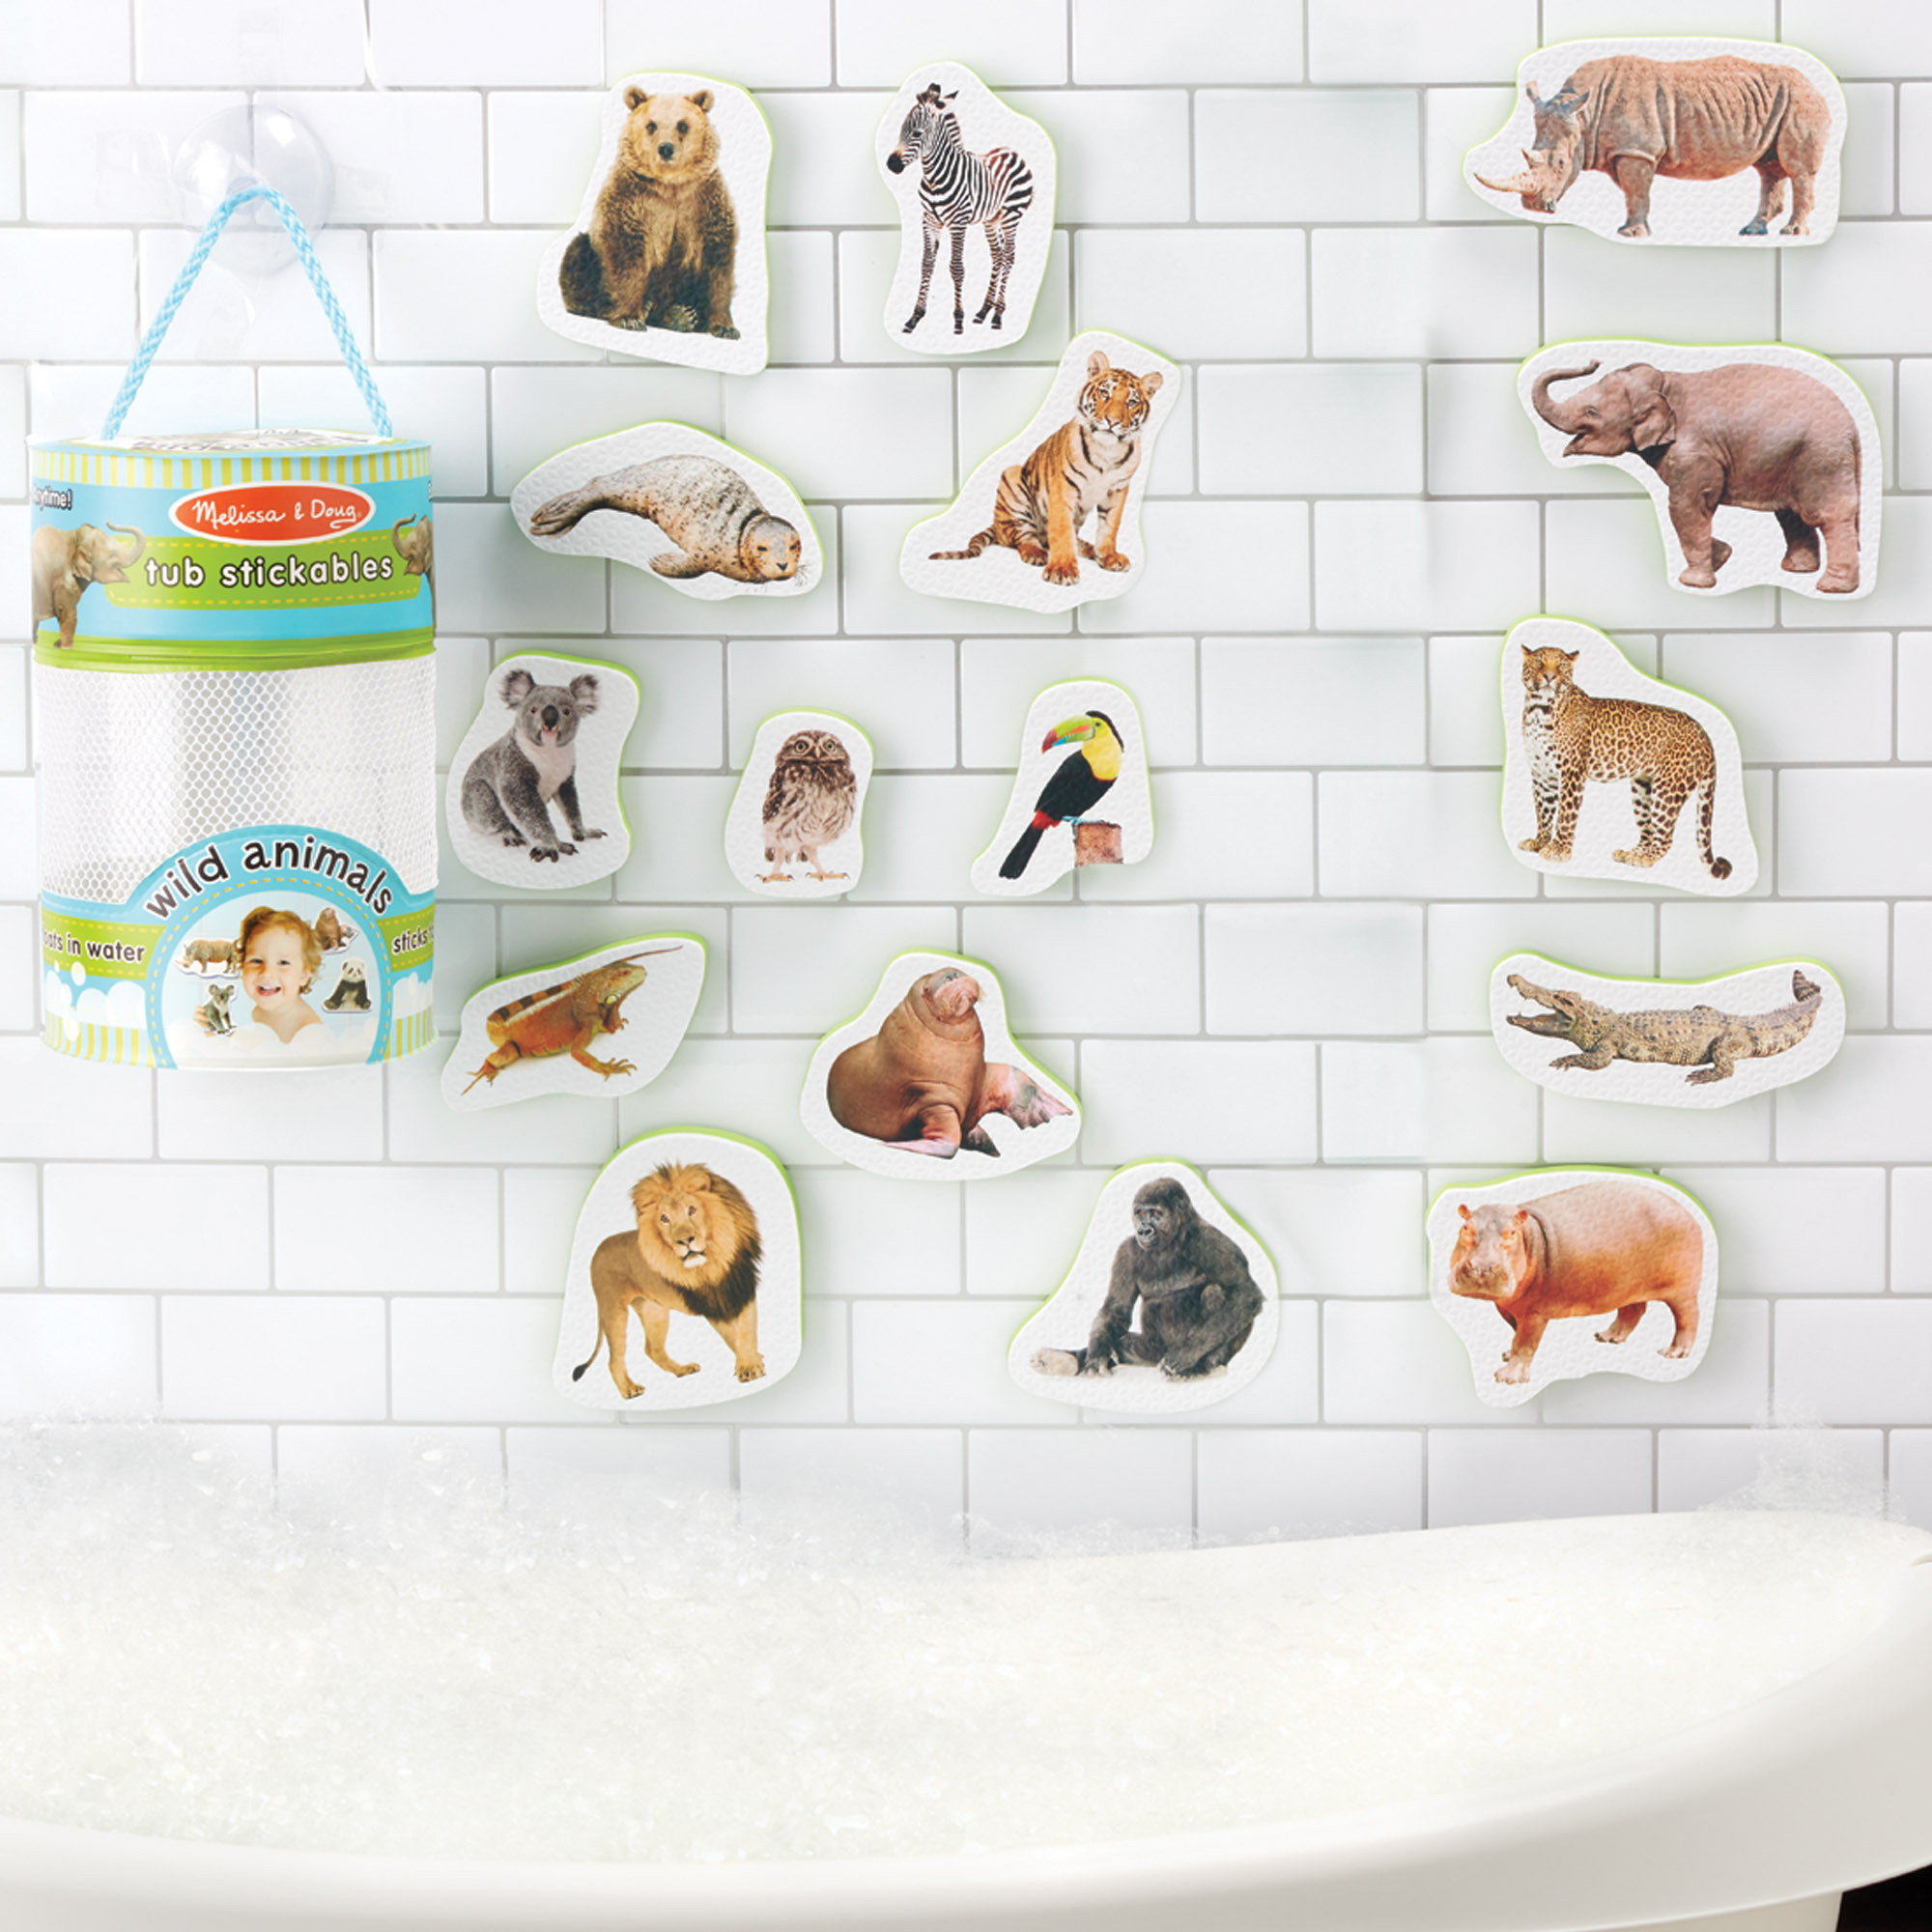 [ตัวติดผนังห้องน้ำ20ชิ้น] ลอยน้ำ ชิ้นใหญ่ ของเล่นในห้องน้ำ Melissa & Doug Tub Stickables Soft Shapes Bath Toy หลากรุ่น 31400/31402/31404/31401/31403 รีวิวดีใน Amazon USA  ตีมตัวติดผนัง นางเงือก